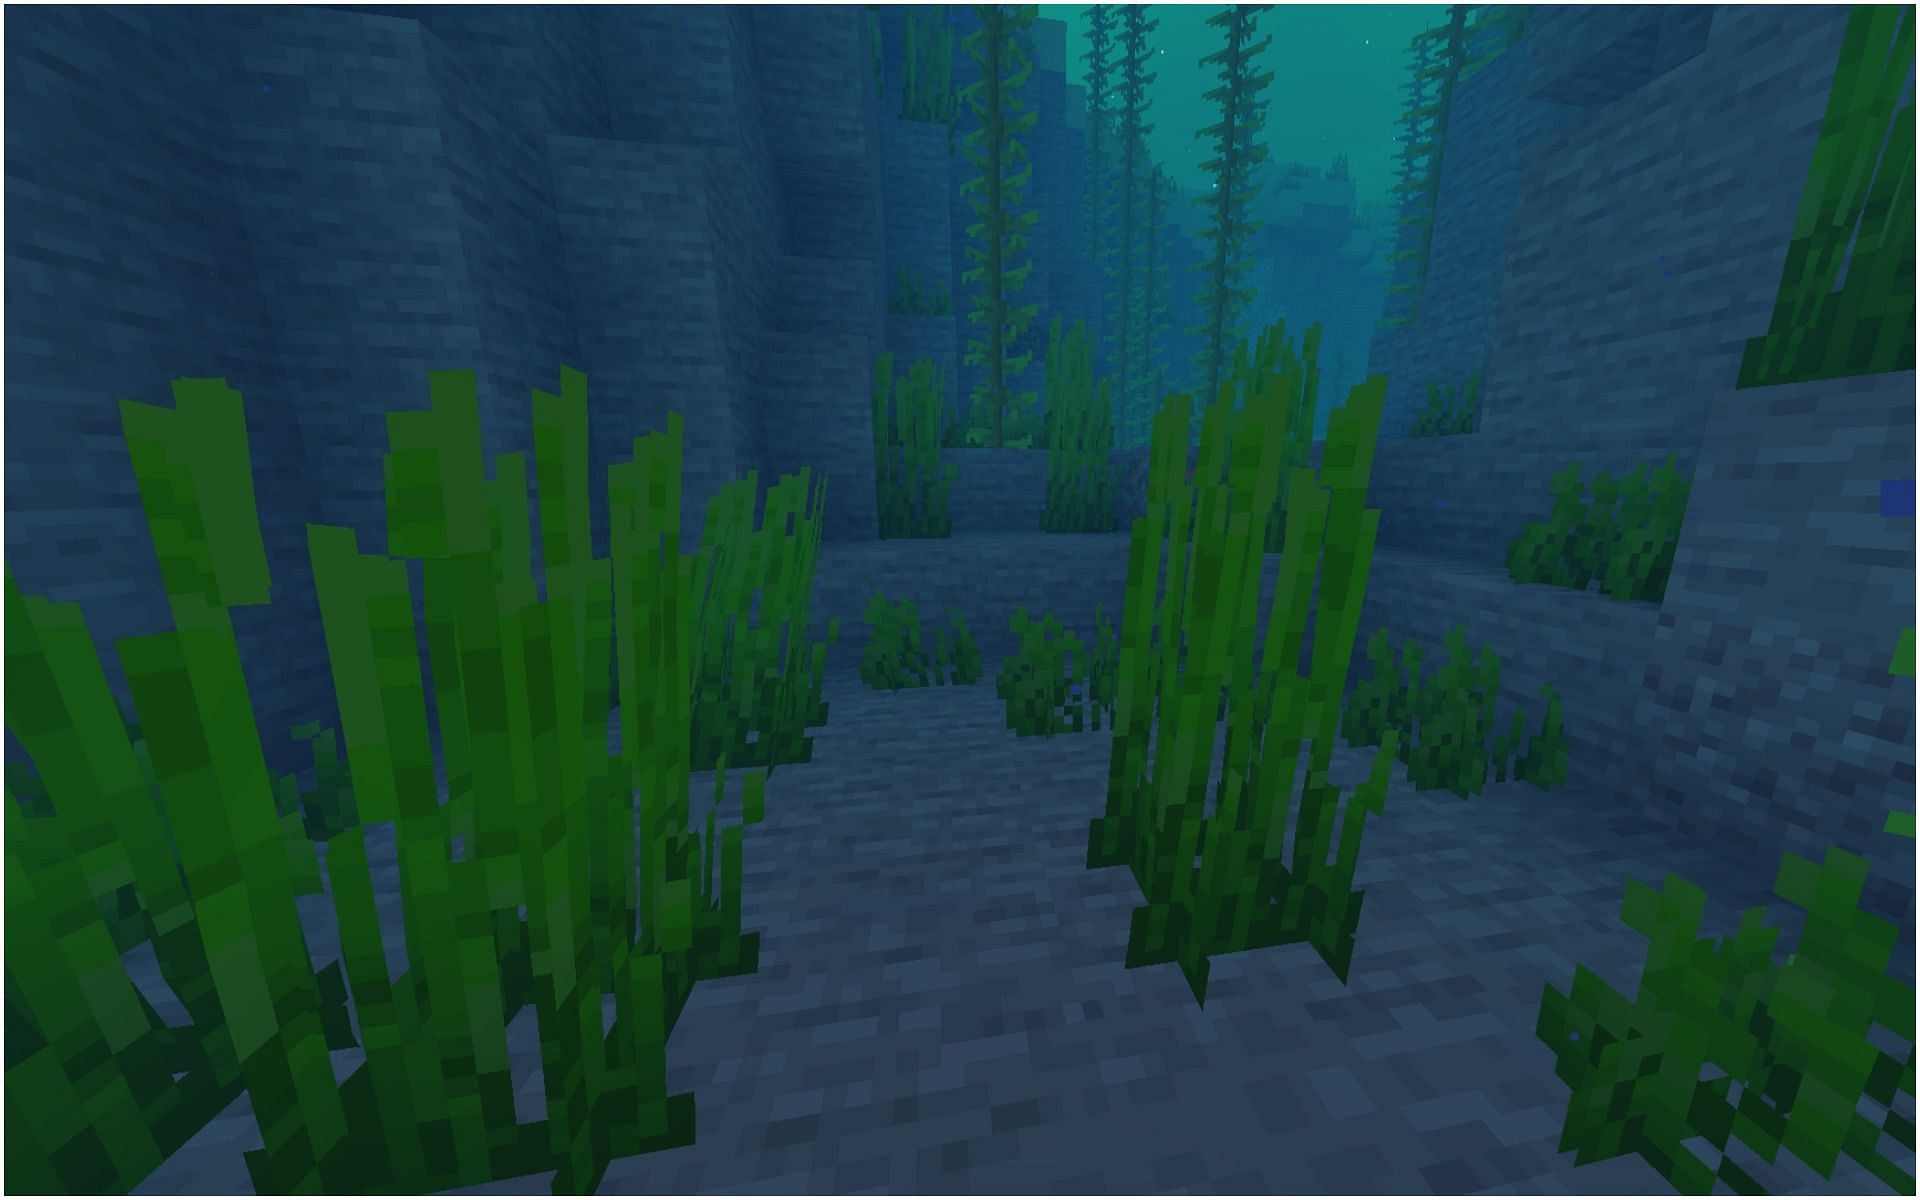 Seagrass in Minecraft (Image via Minecraft)